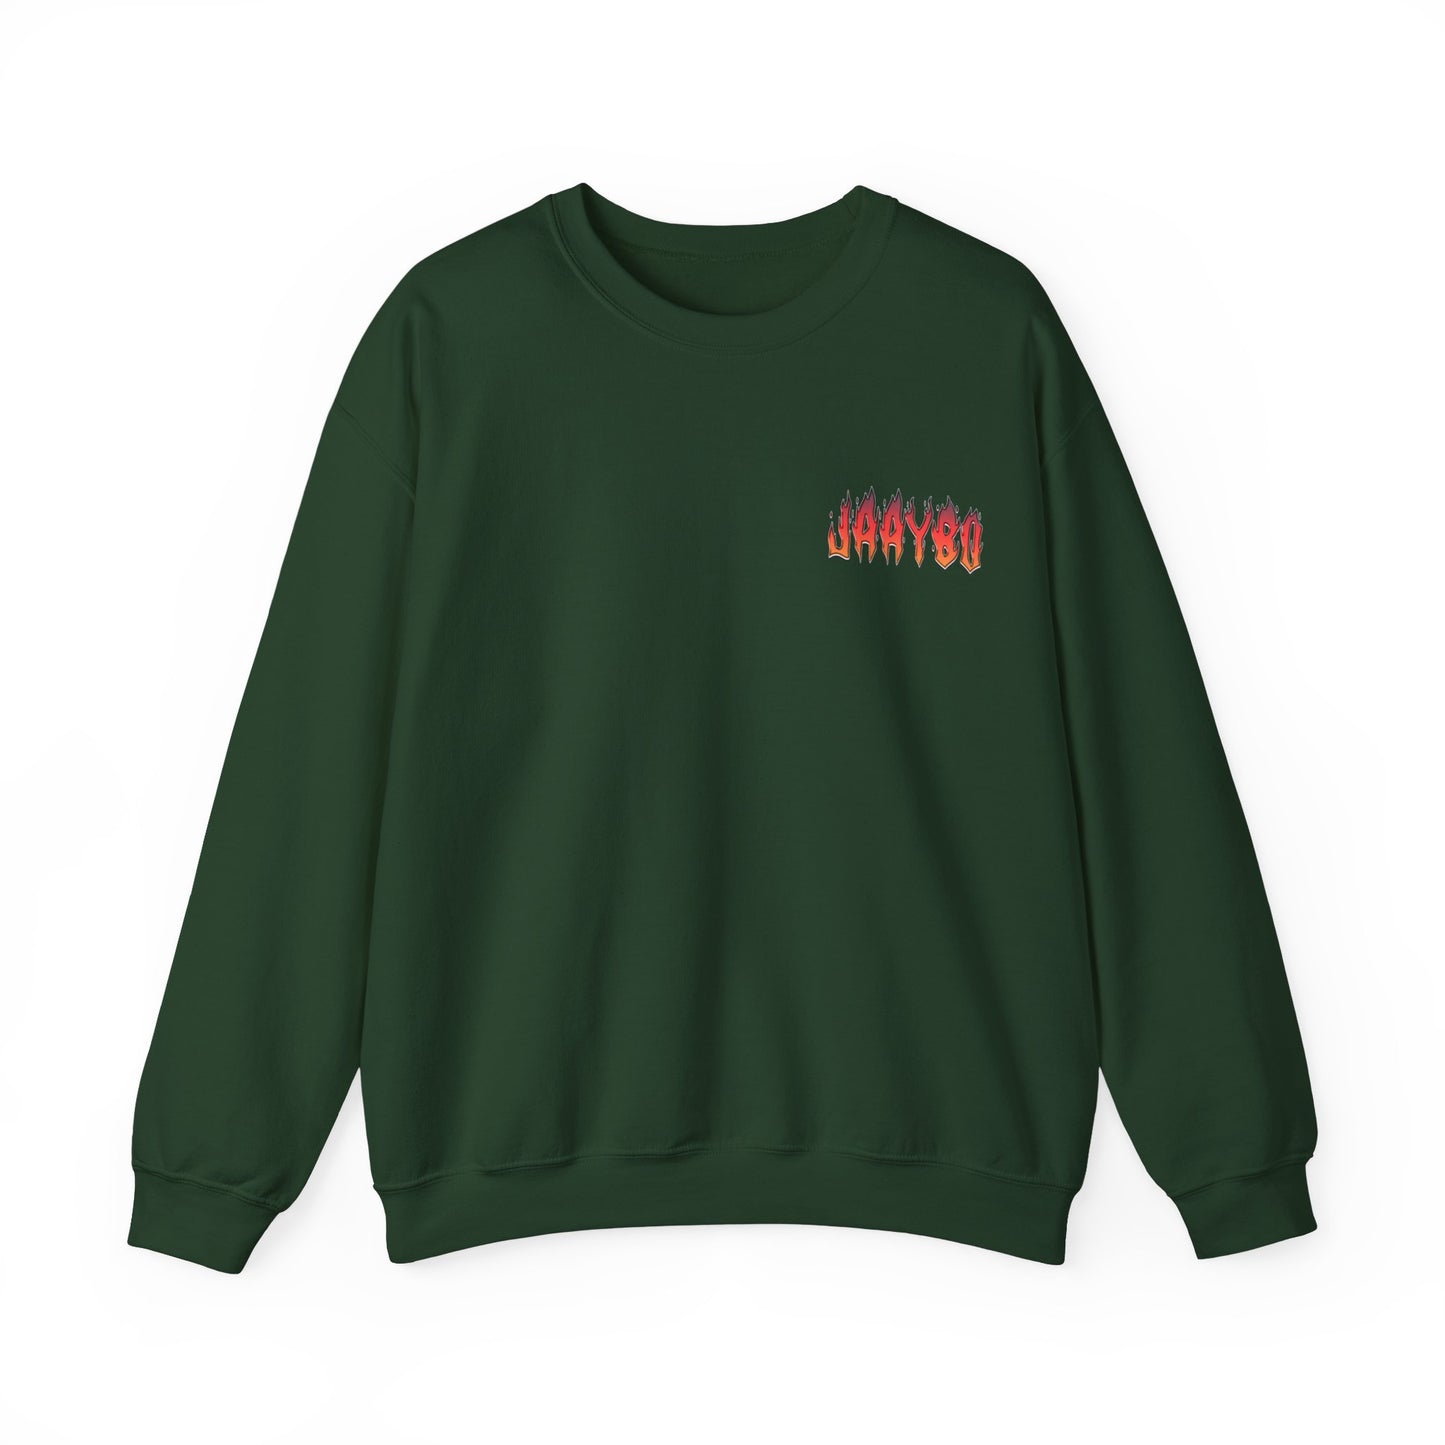 Jaaybo Crewneck Sweatshirt